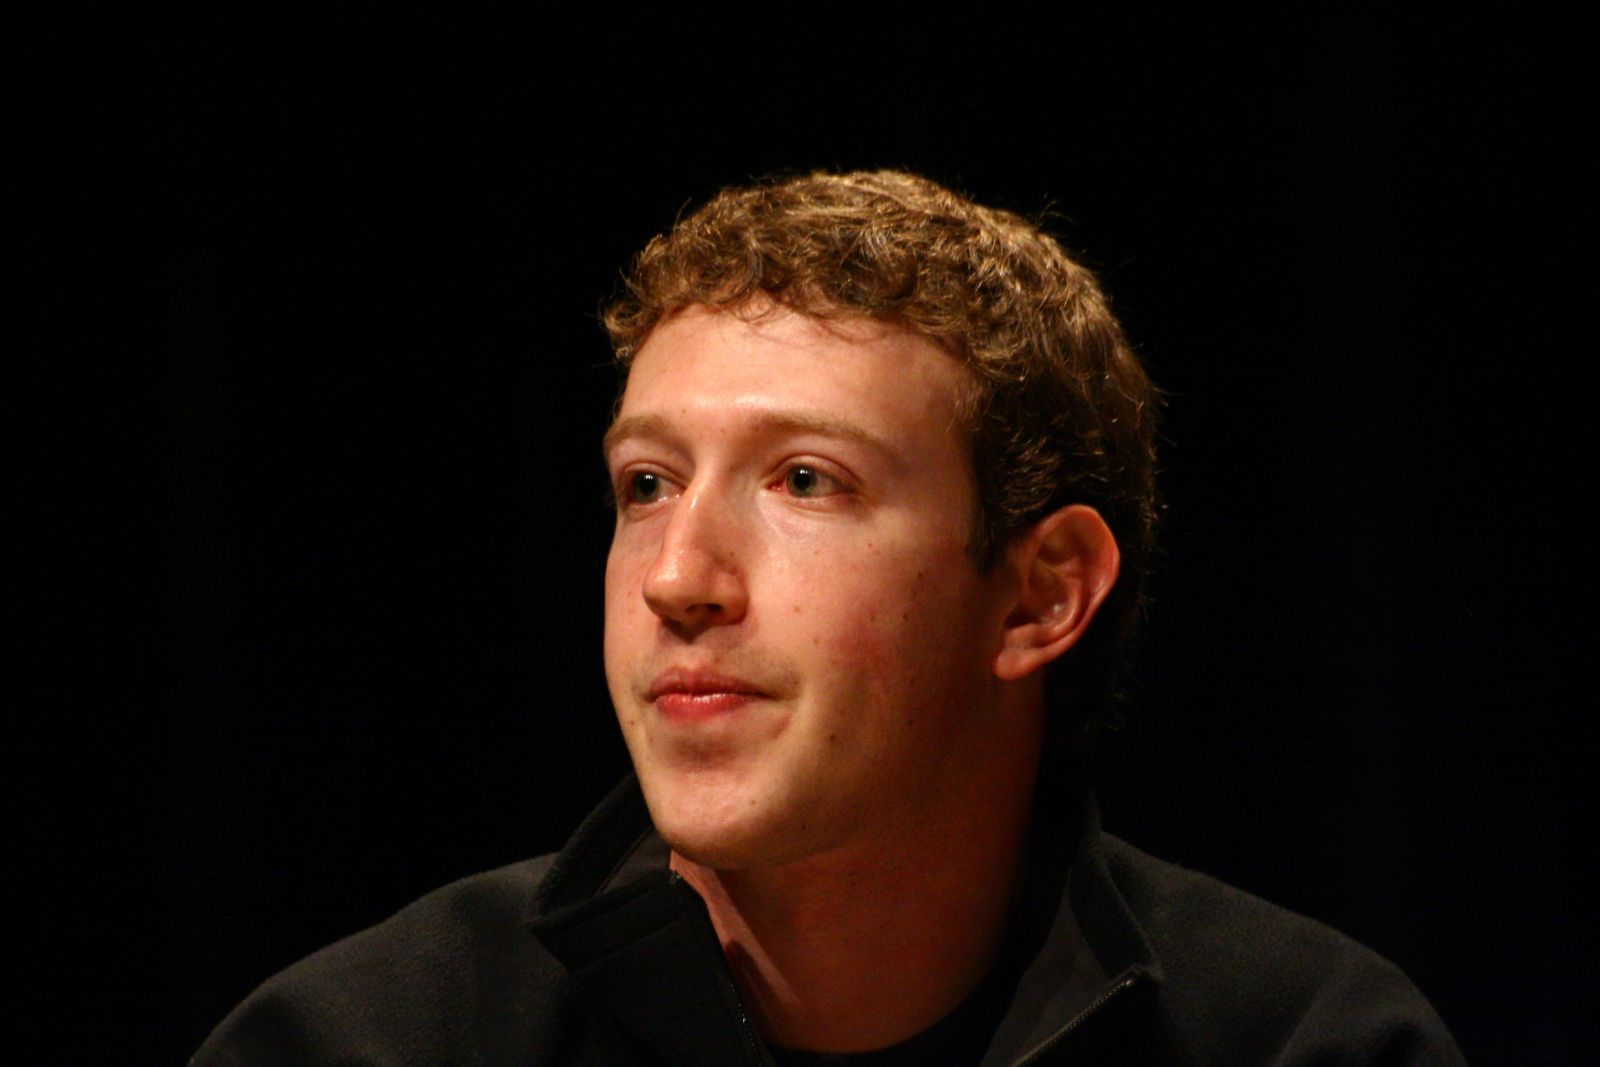 Mark Zuckerberg em um ambiente escuro olhando para o lado